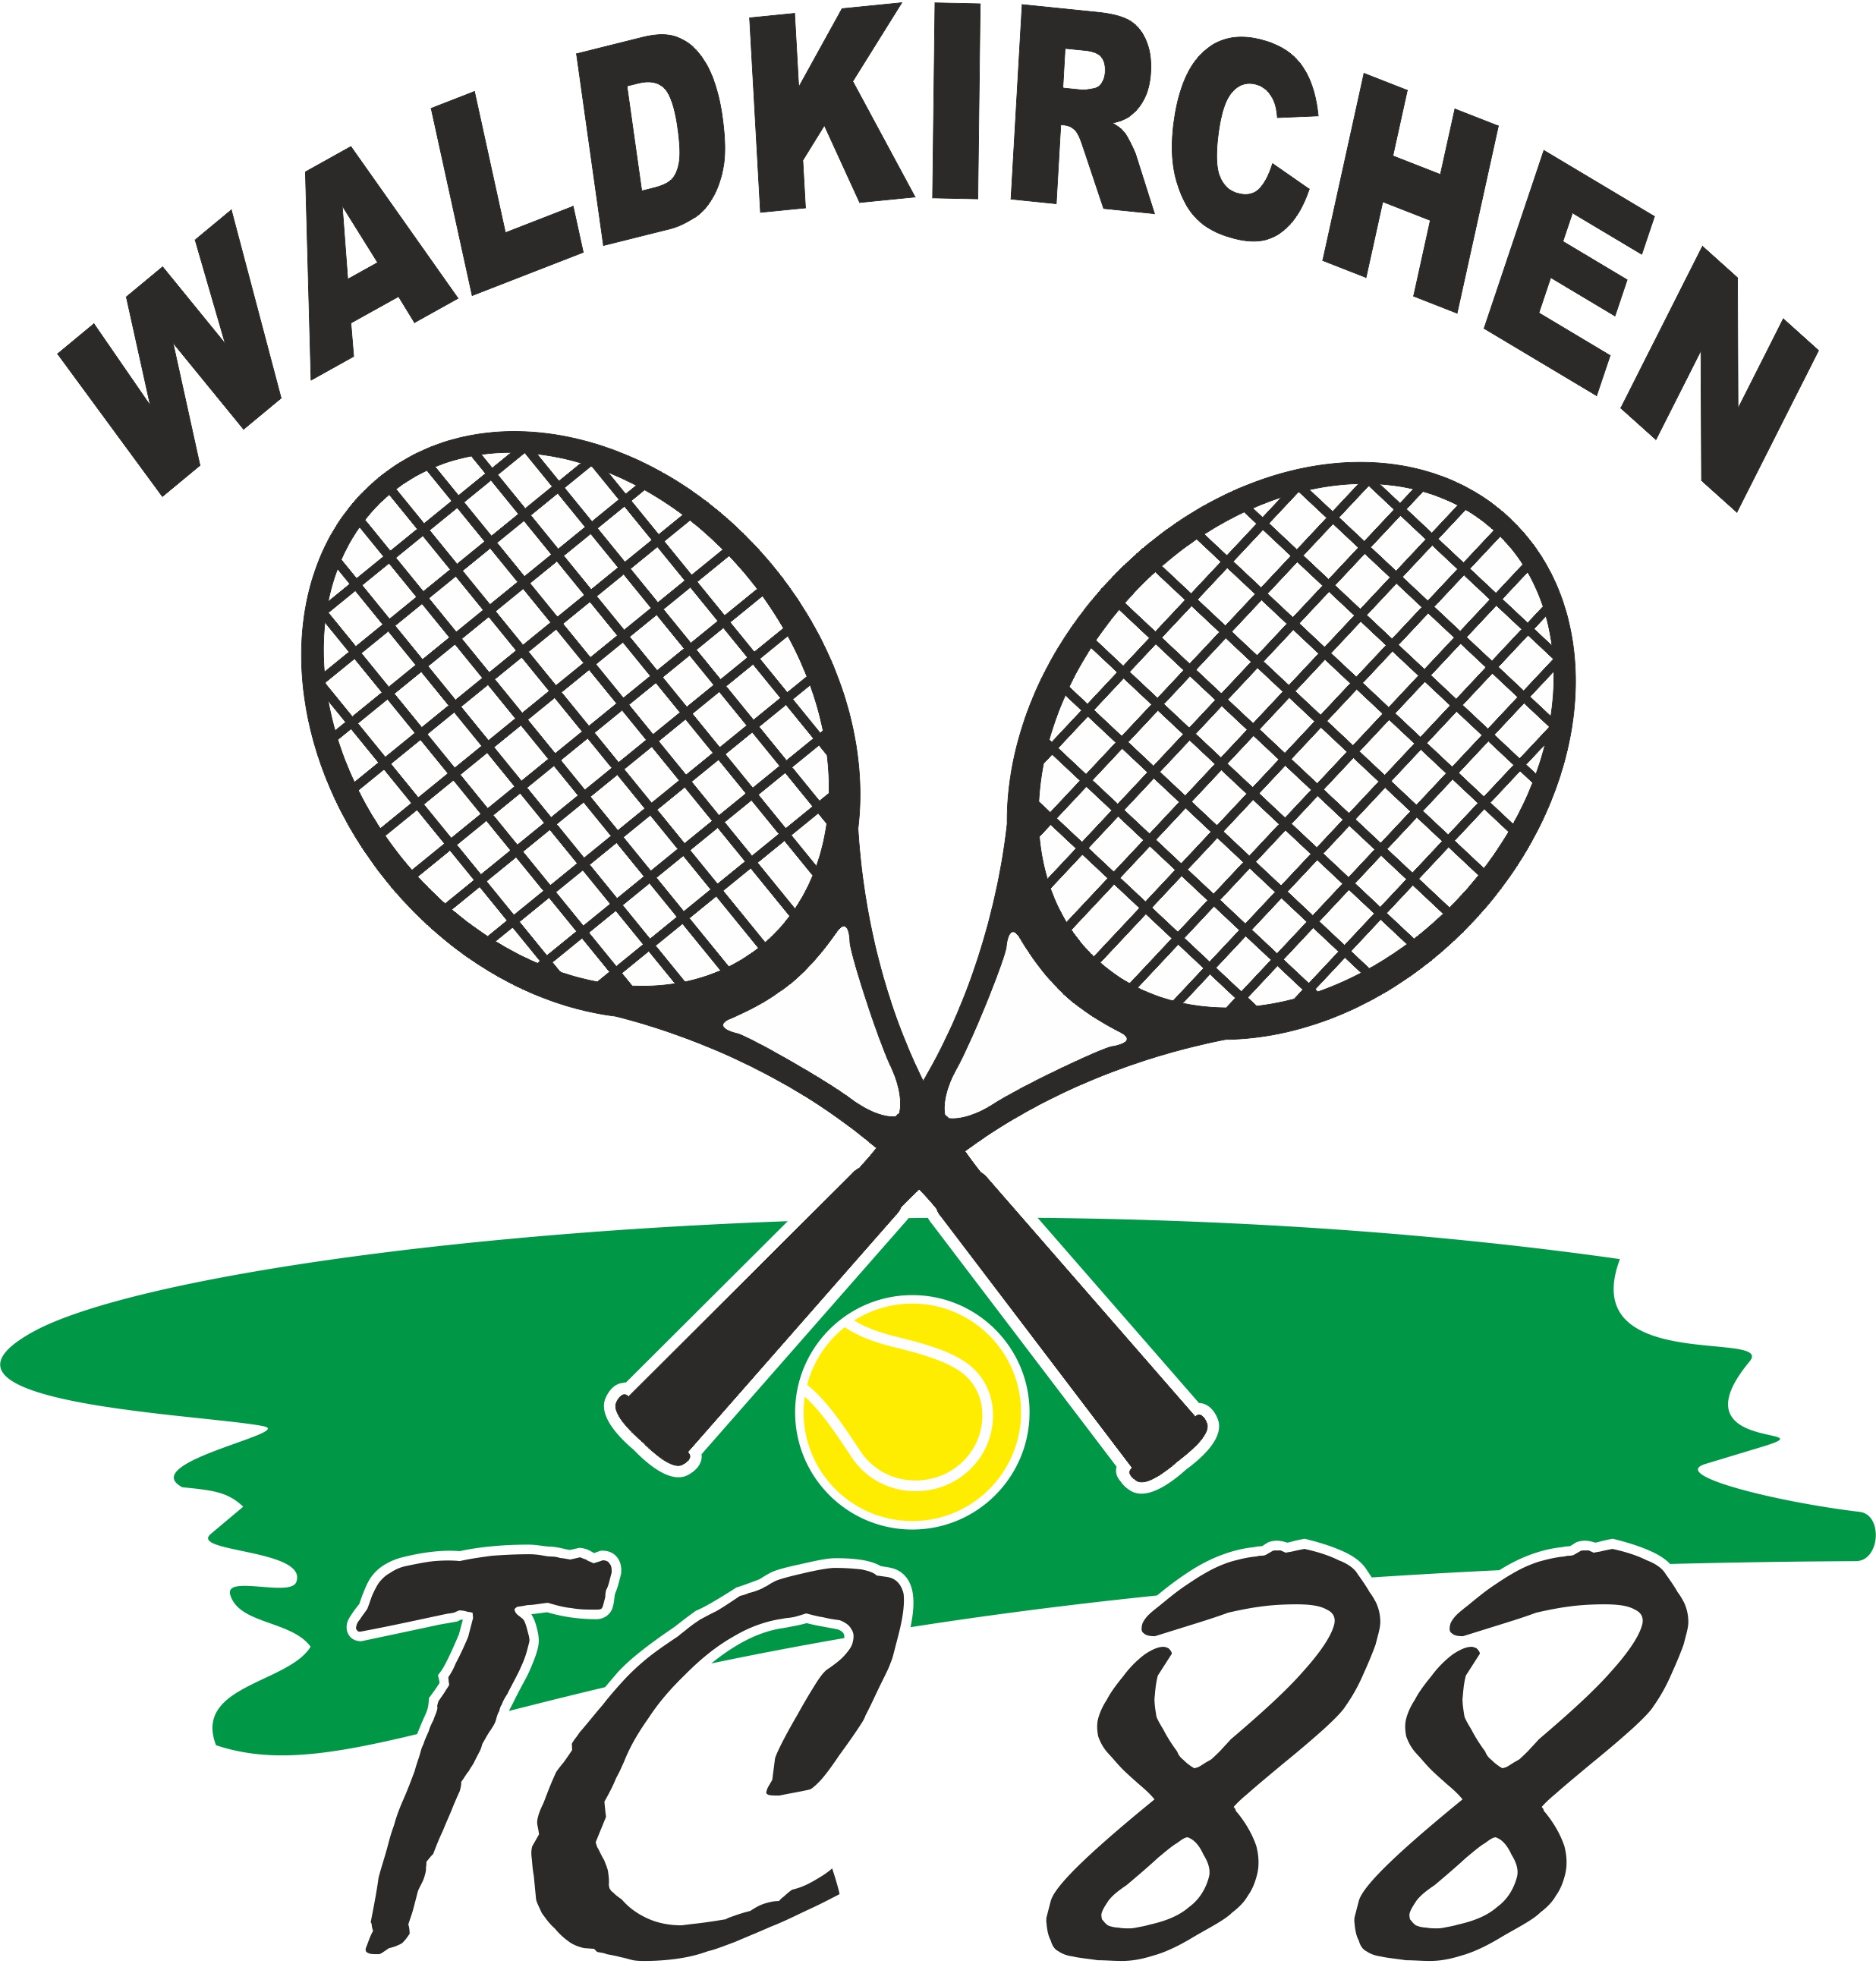 TC 88 Waldkirchen